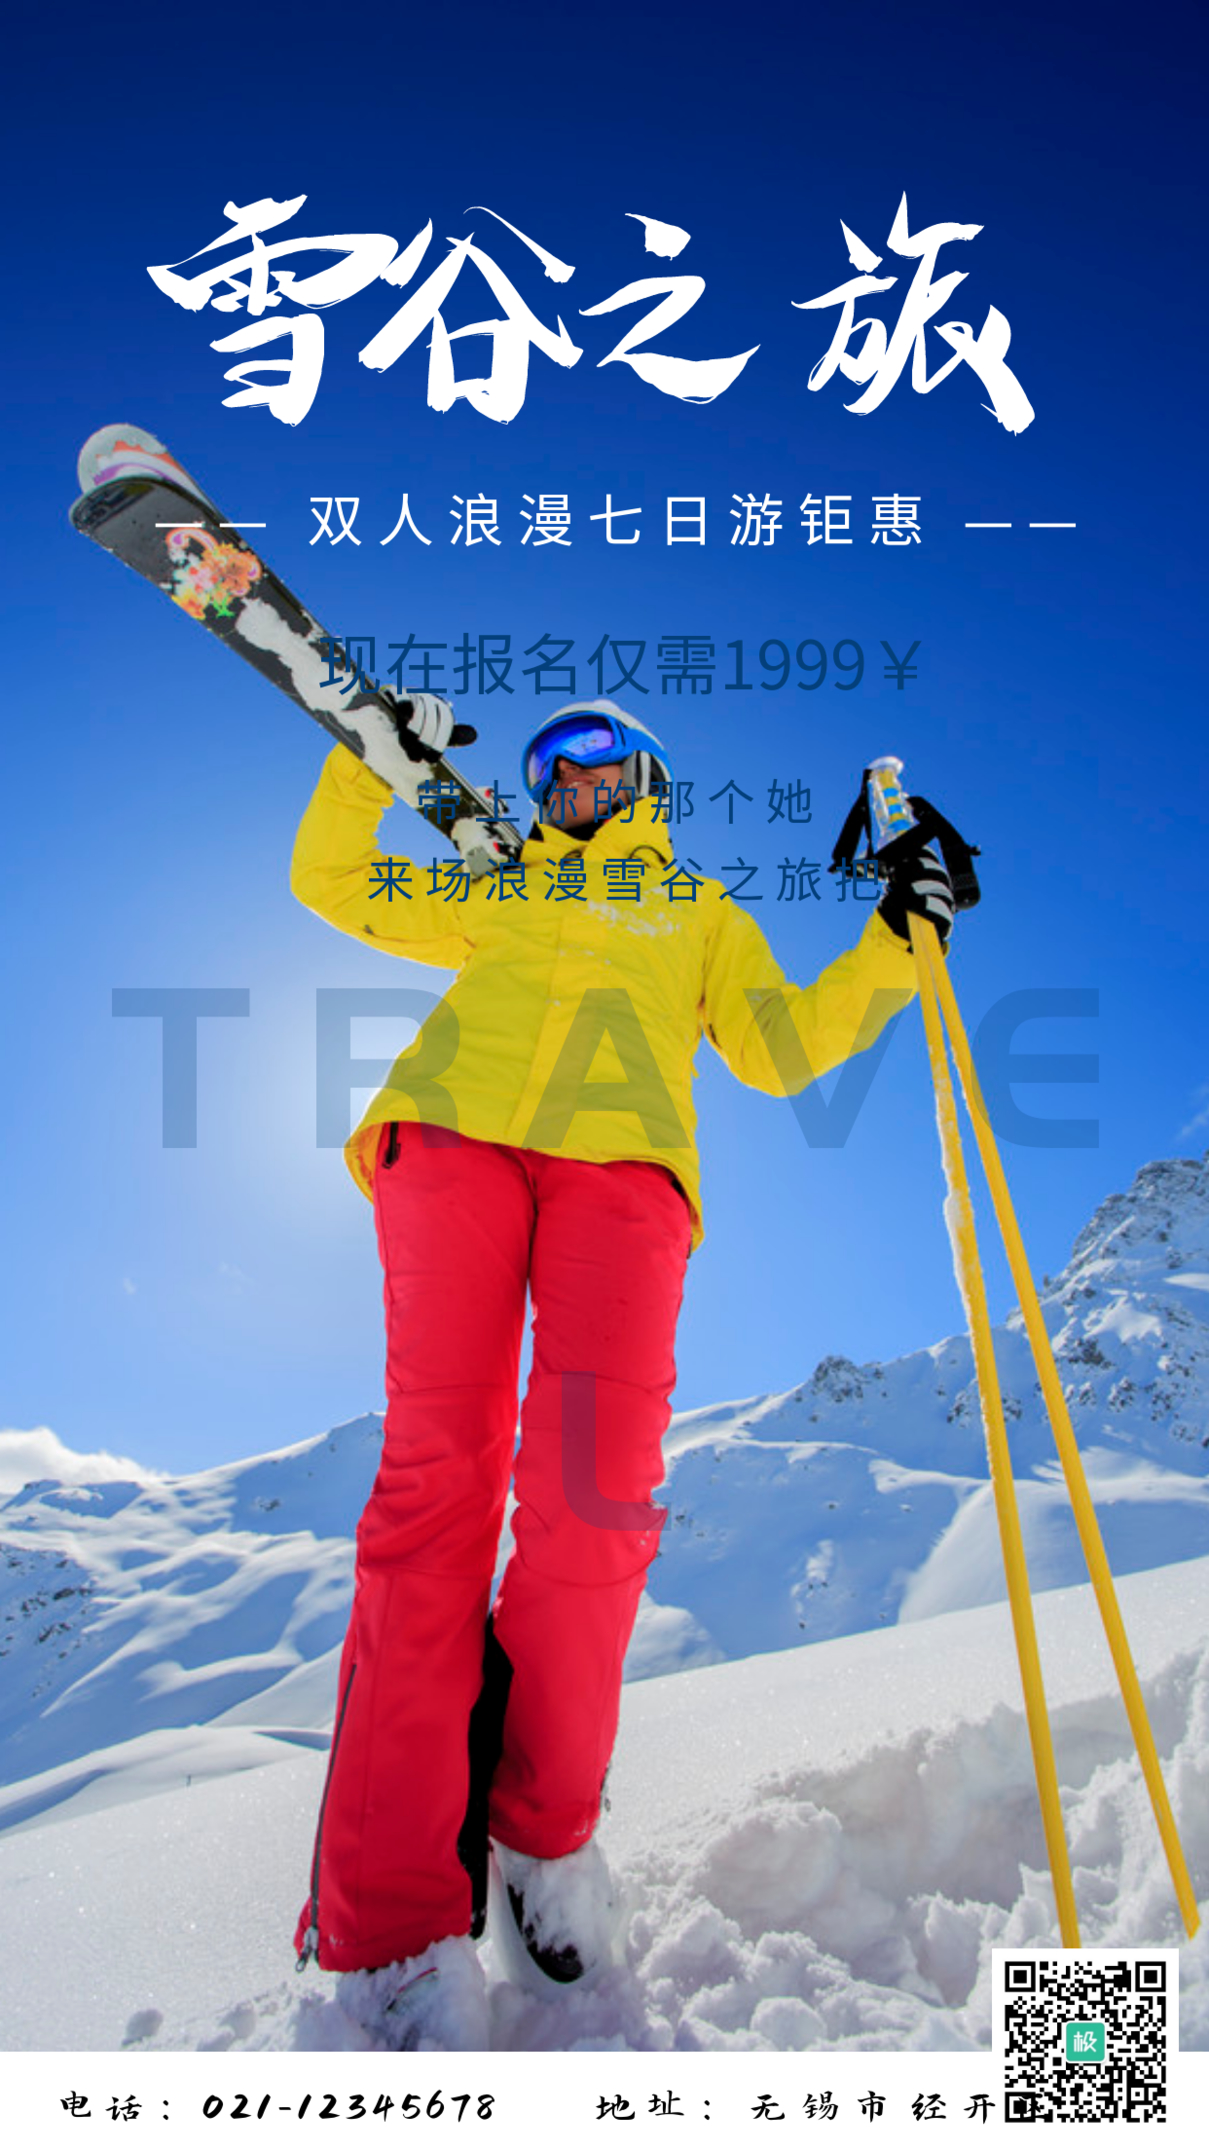 摄影风雪乡雪谷冬季旅游宣传手机营销海报